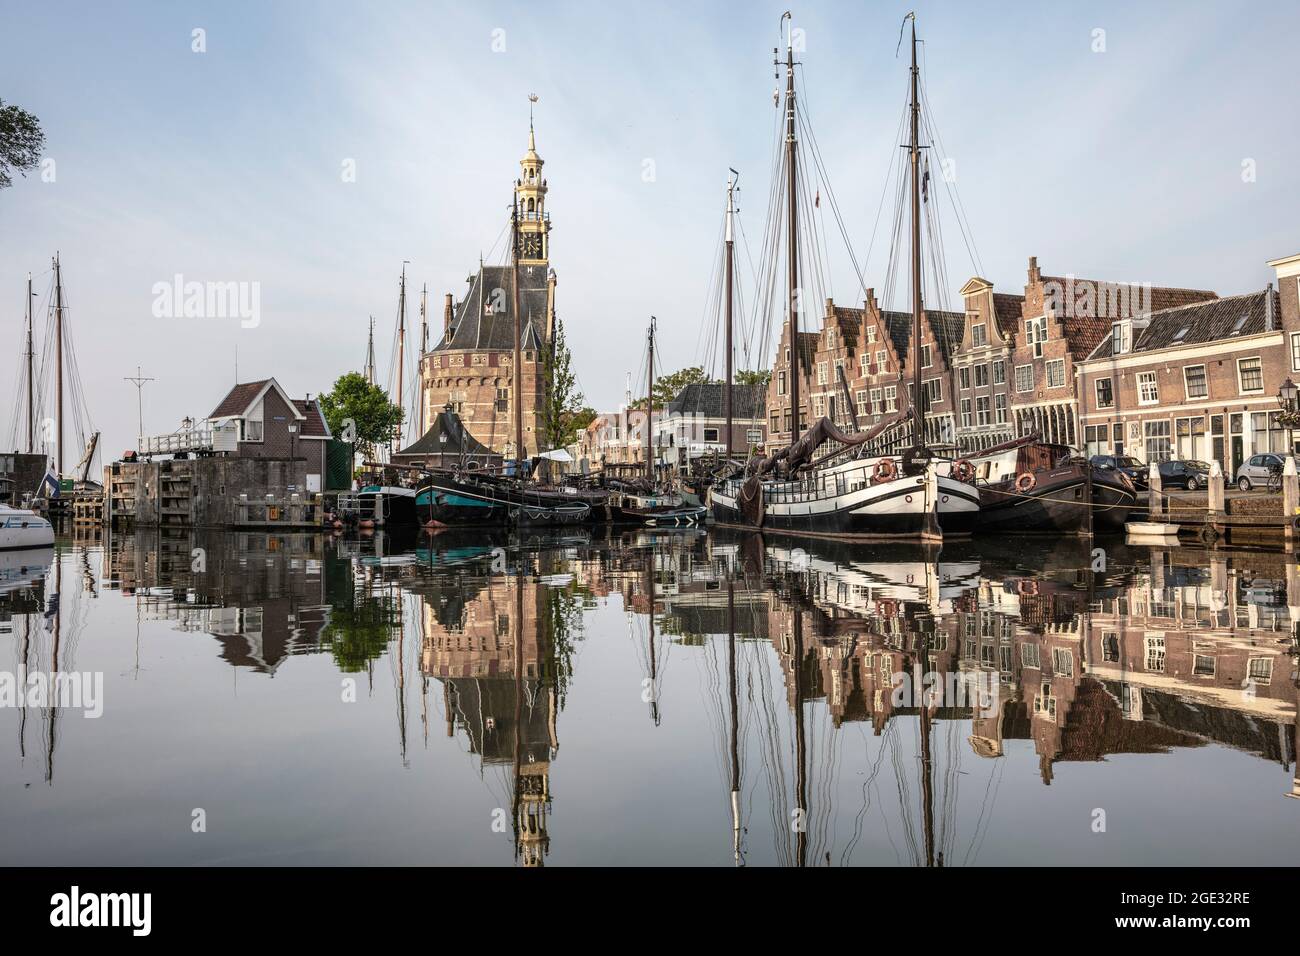 Niederlande, Hoorn. Historisches Stadtzentrum, Hafen, Turm namens Hoofdtoren. Traditionelle Segelboote. Stockfoto